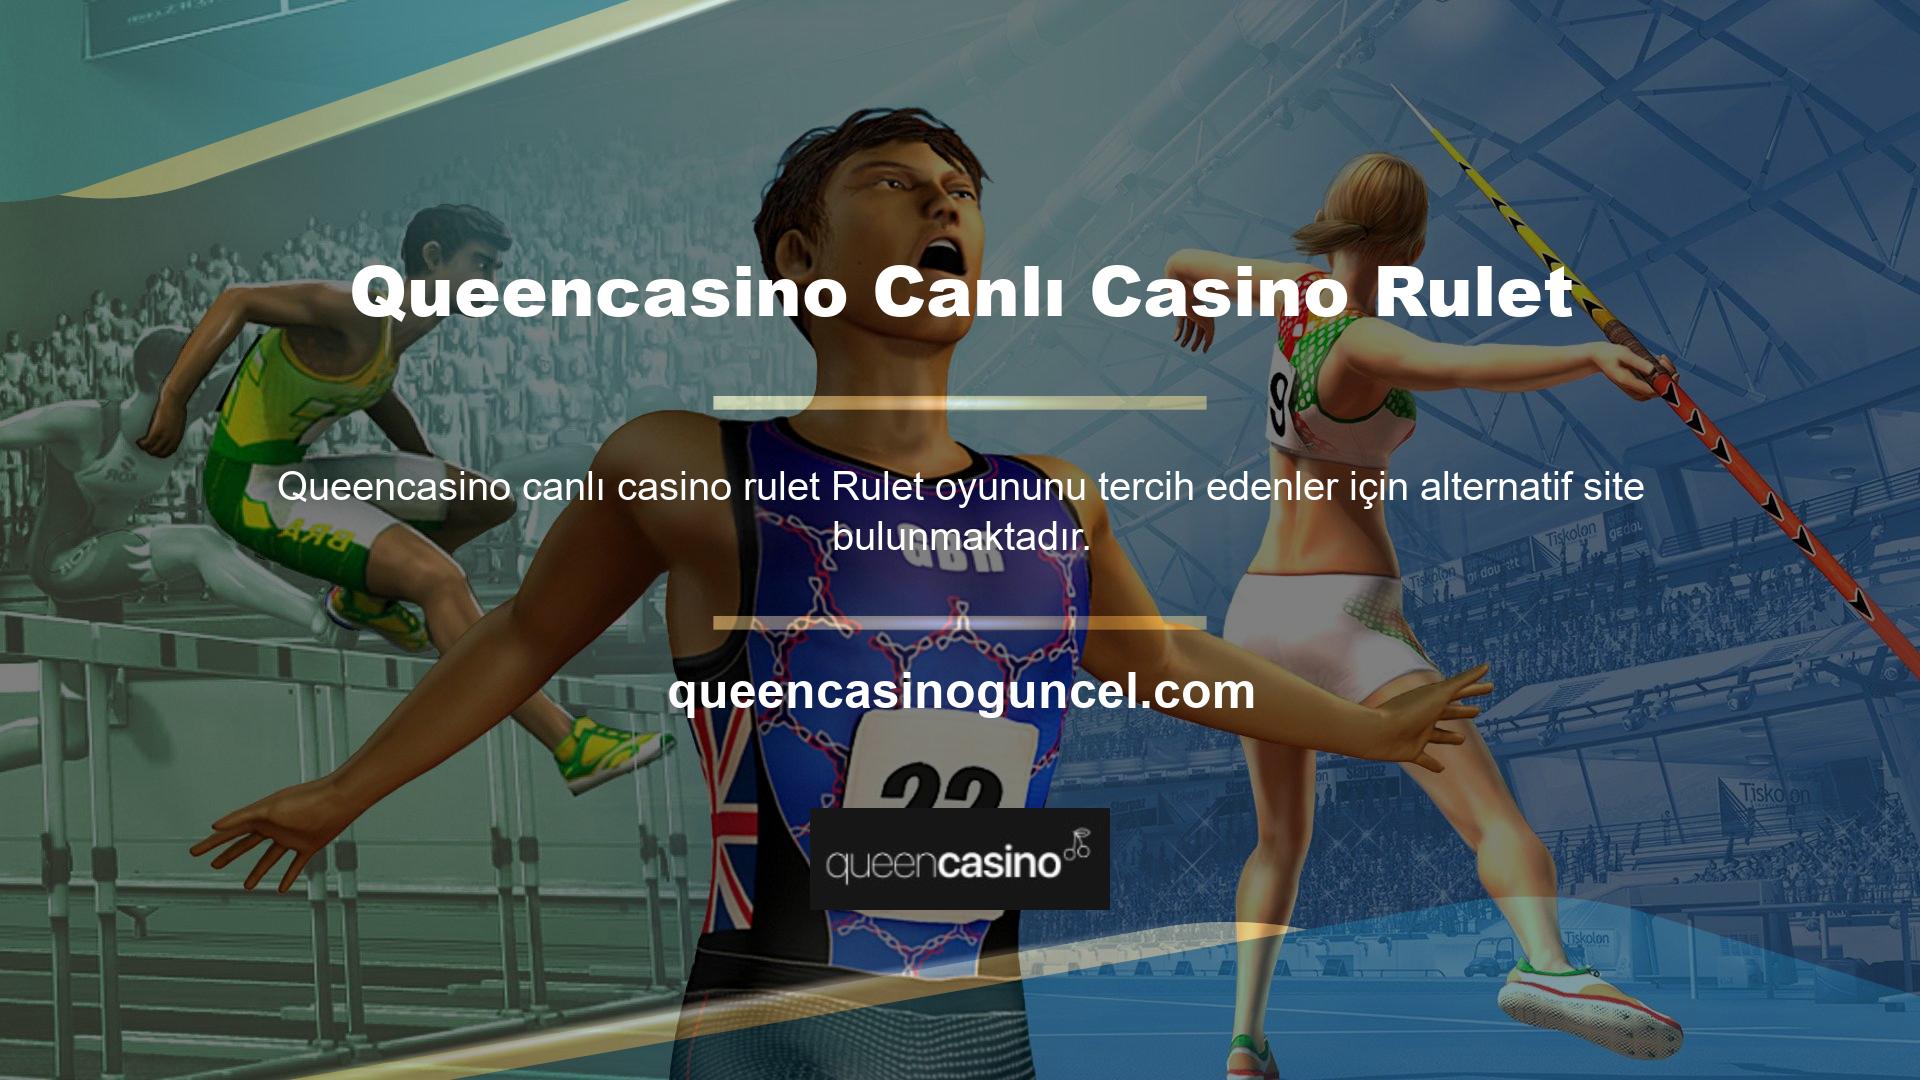 Queencasino Canlı Casino Rulet